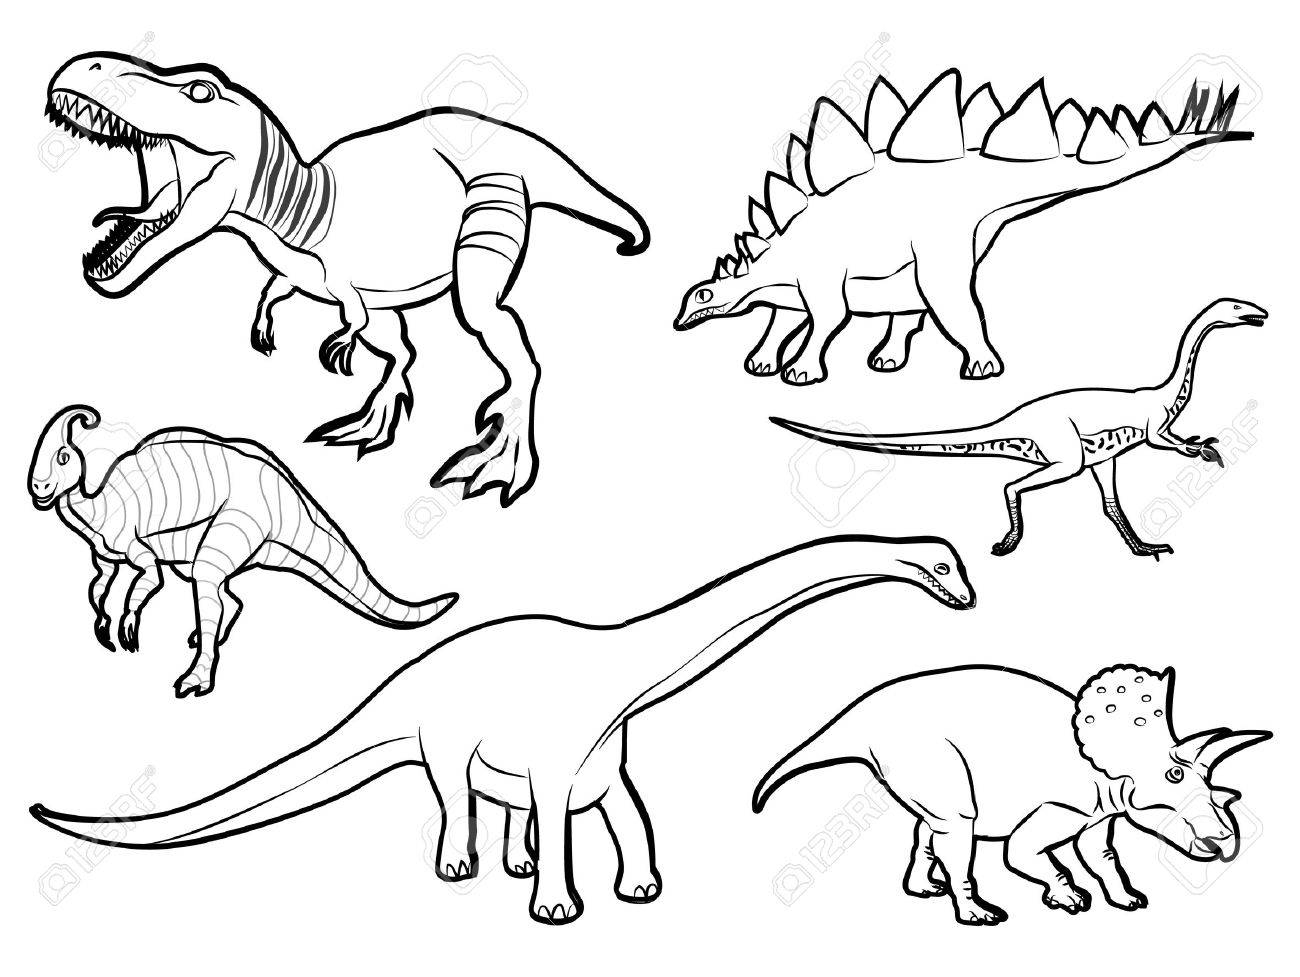 Динозавр раскраска вектор